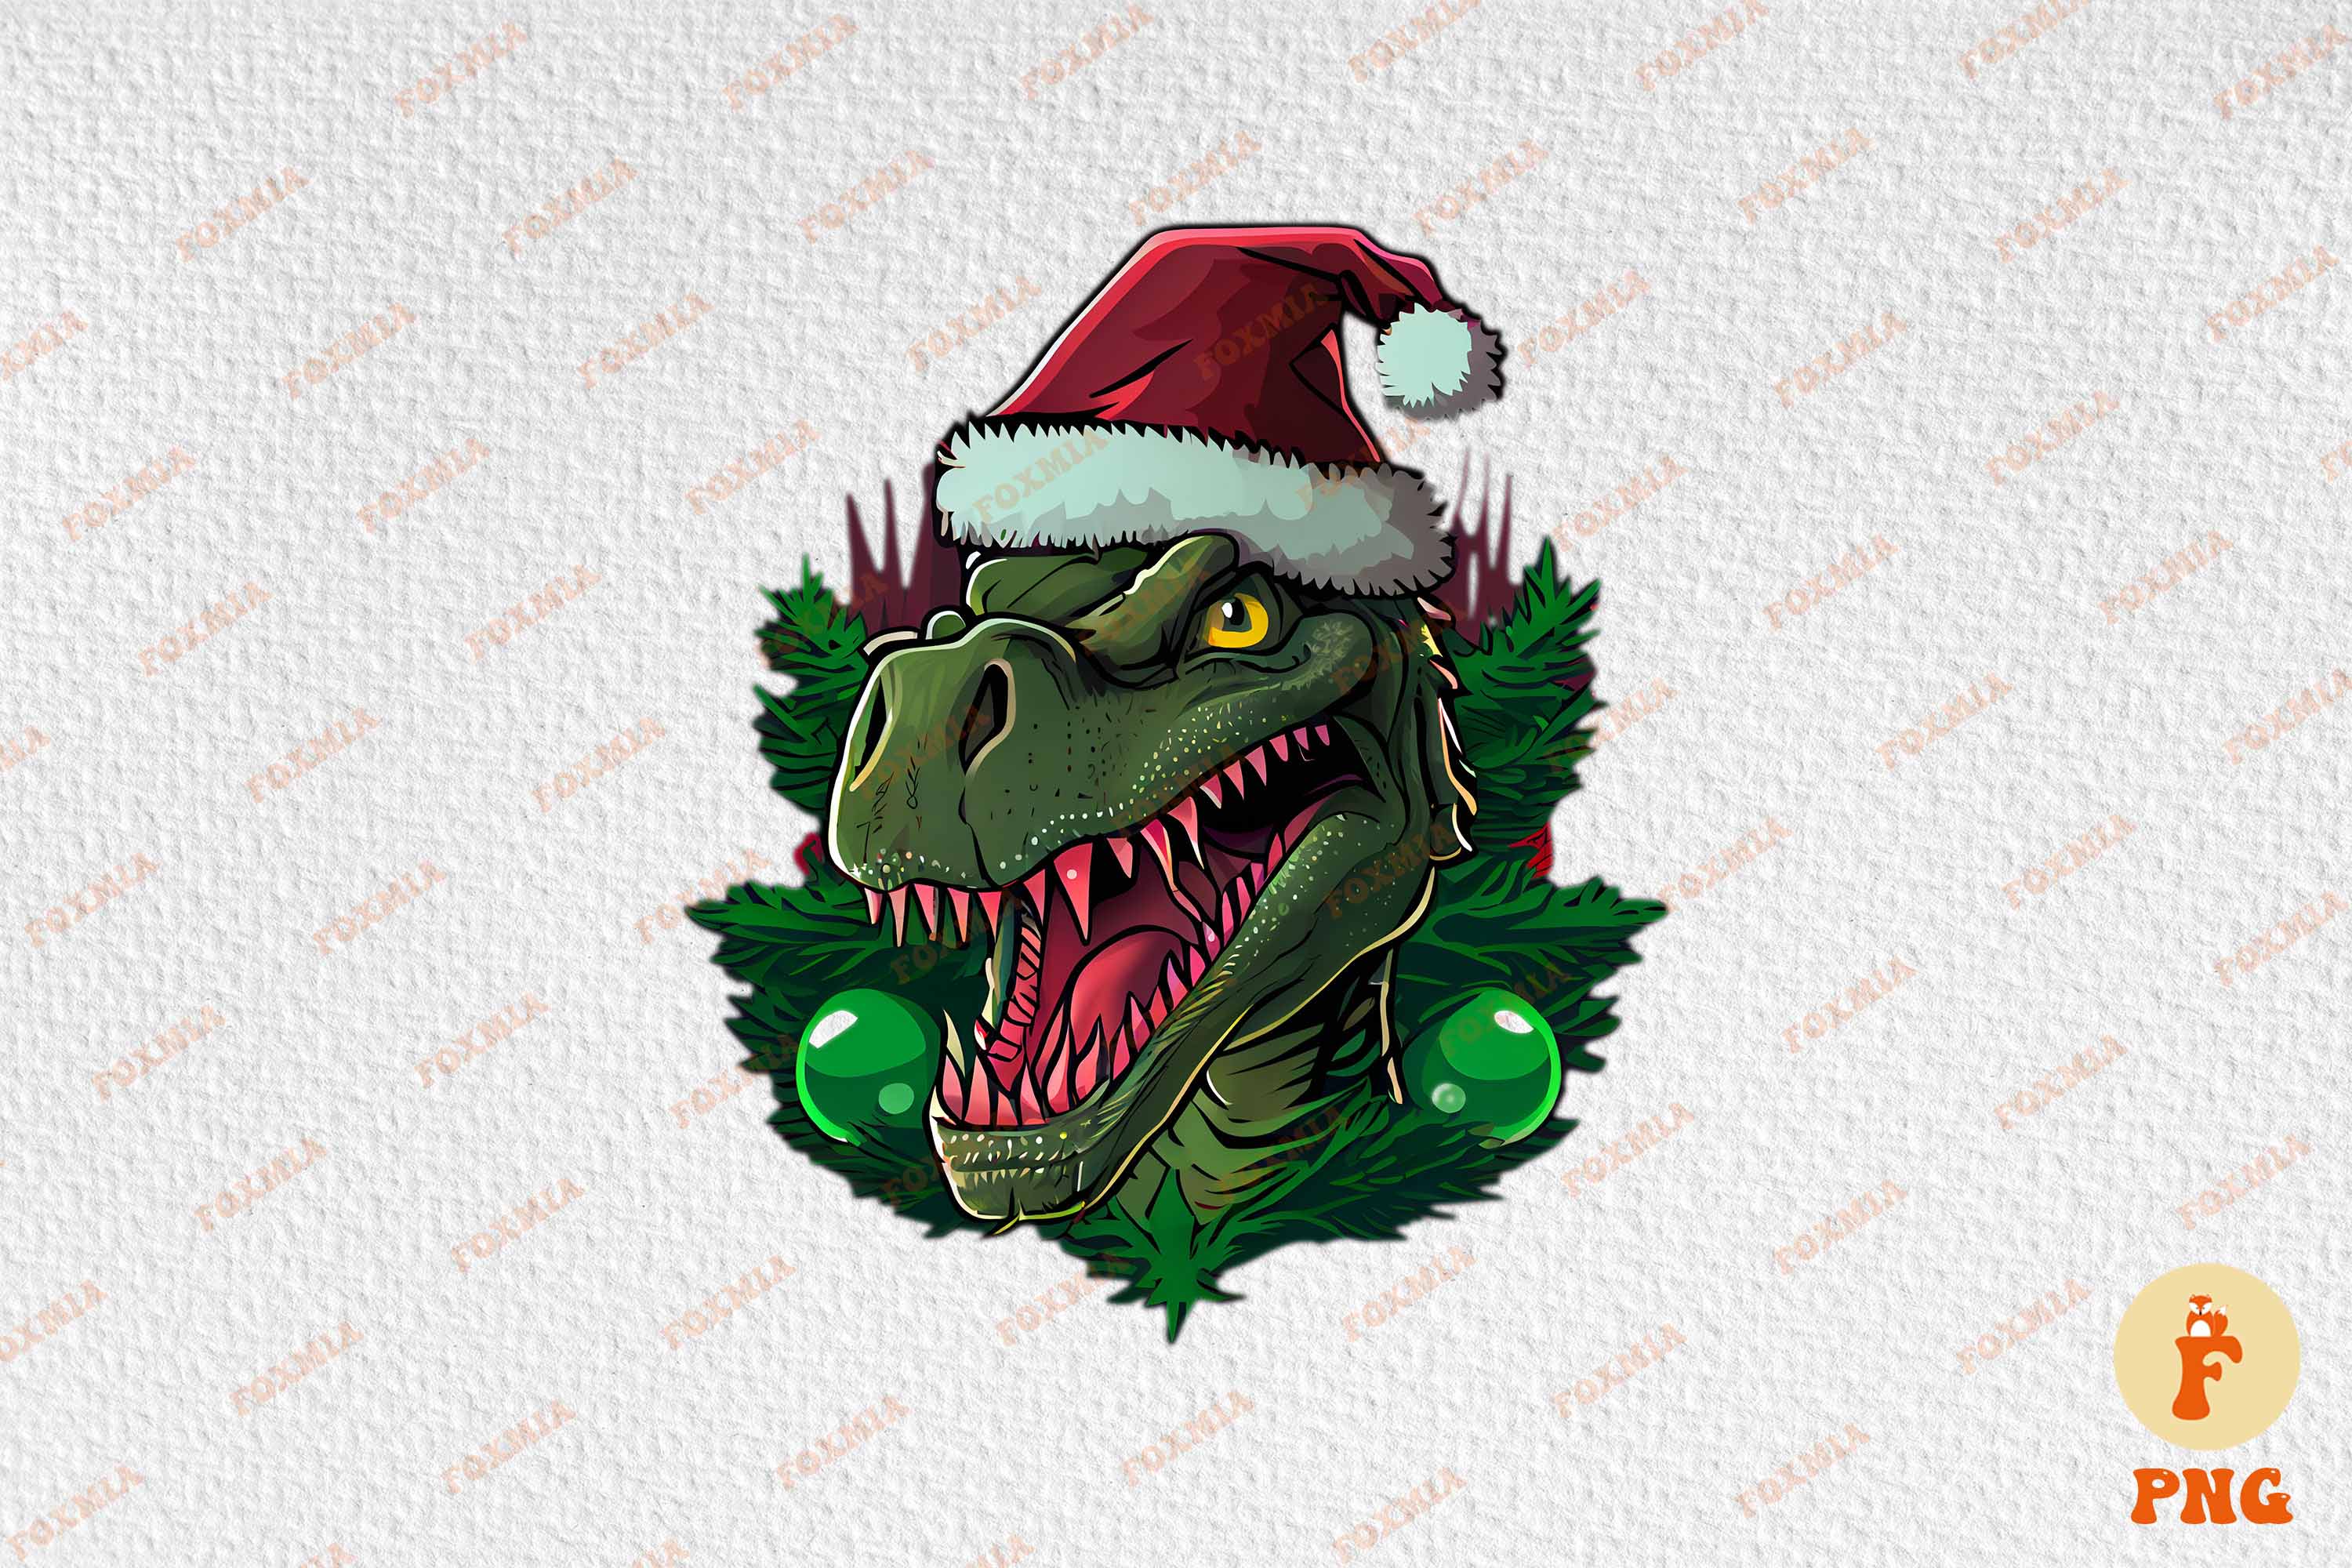 Enchanting image of a dinosaur in Santa's hat.